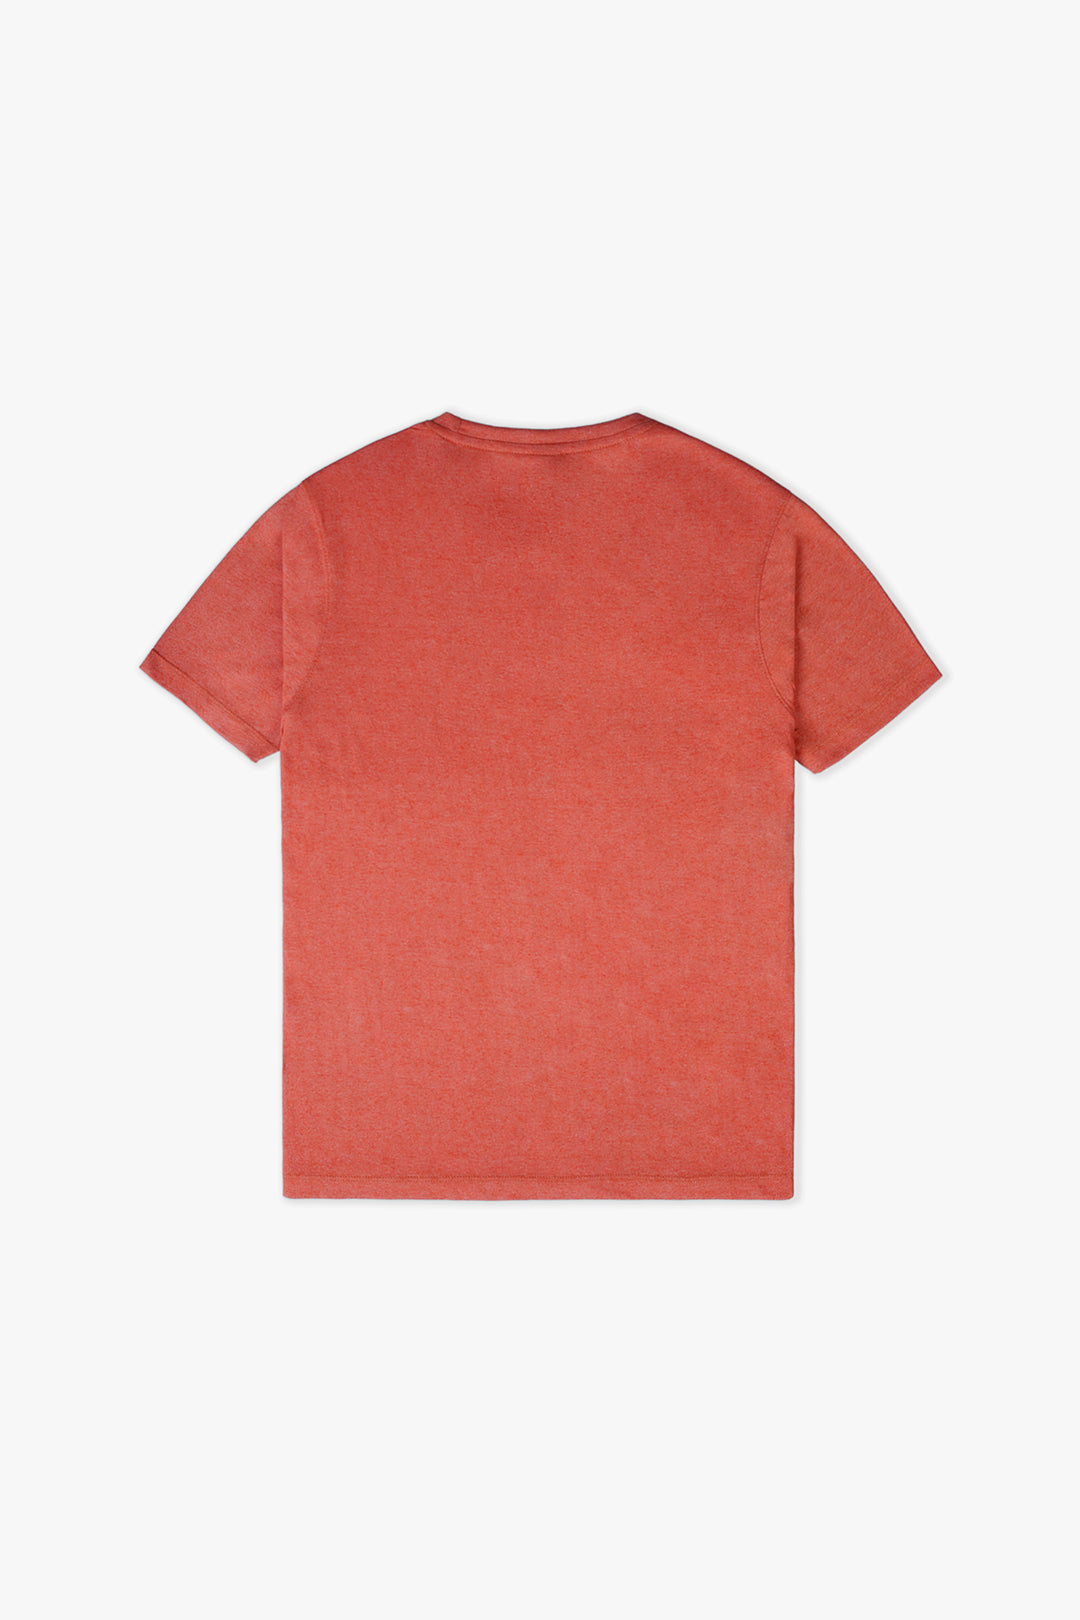 Men's Basic T-Shirt In Rust